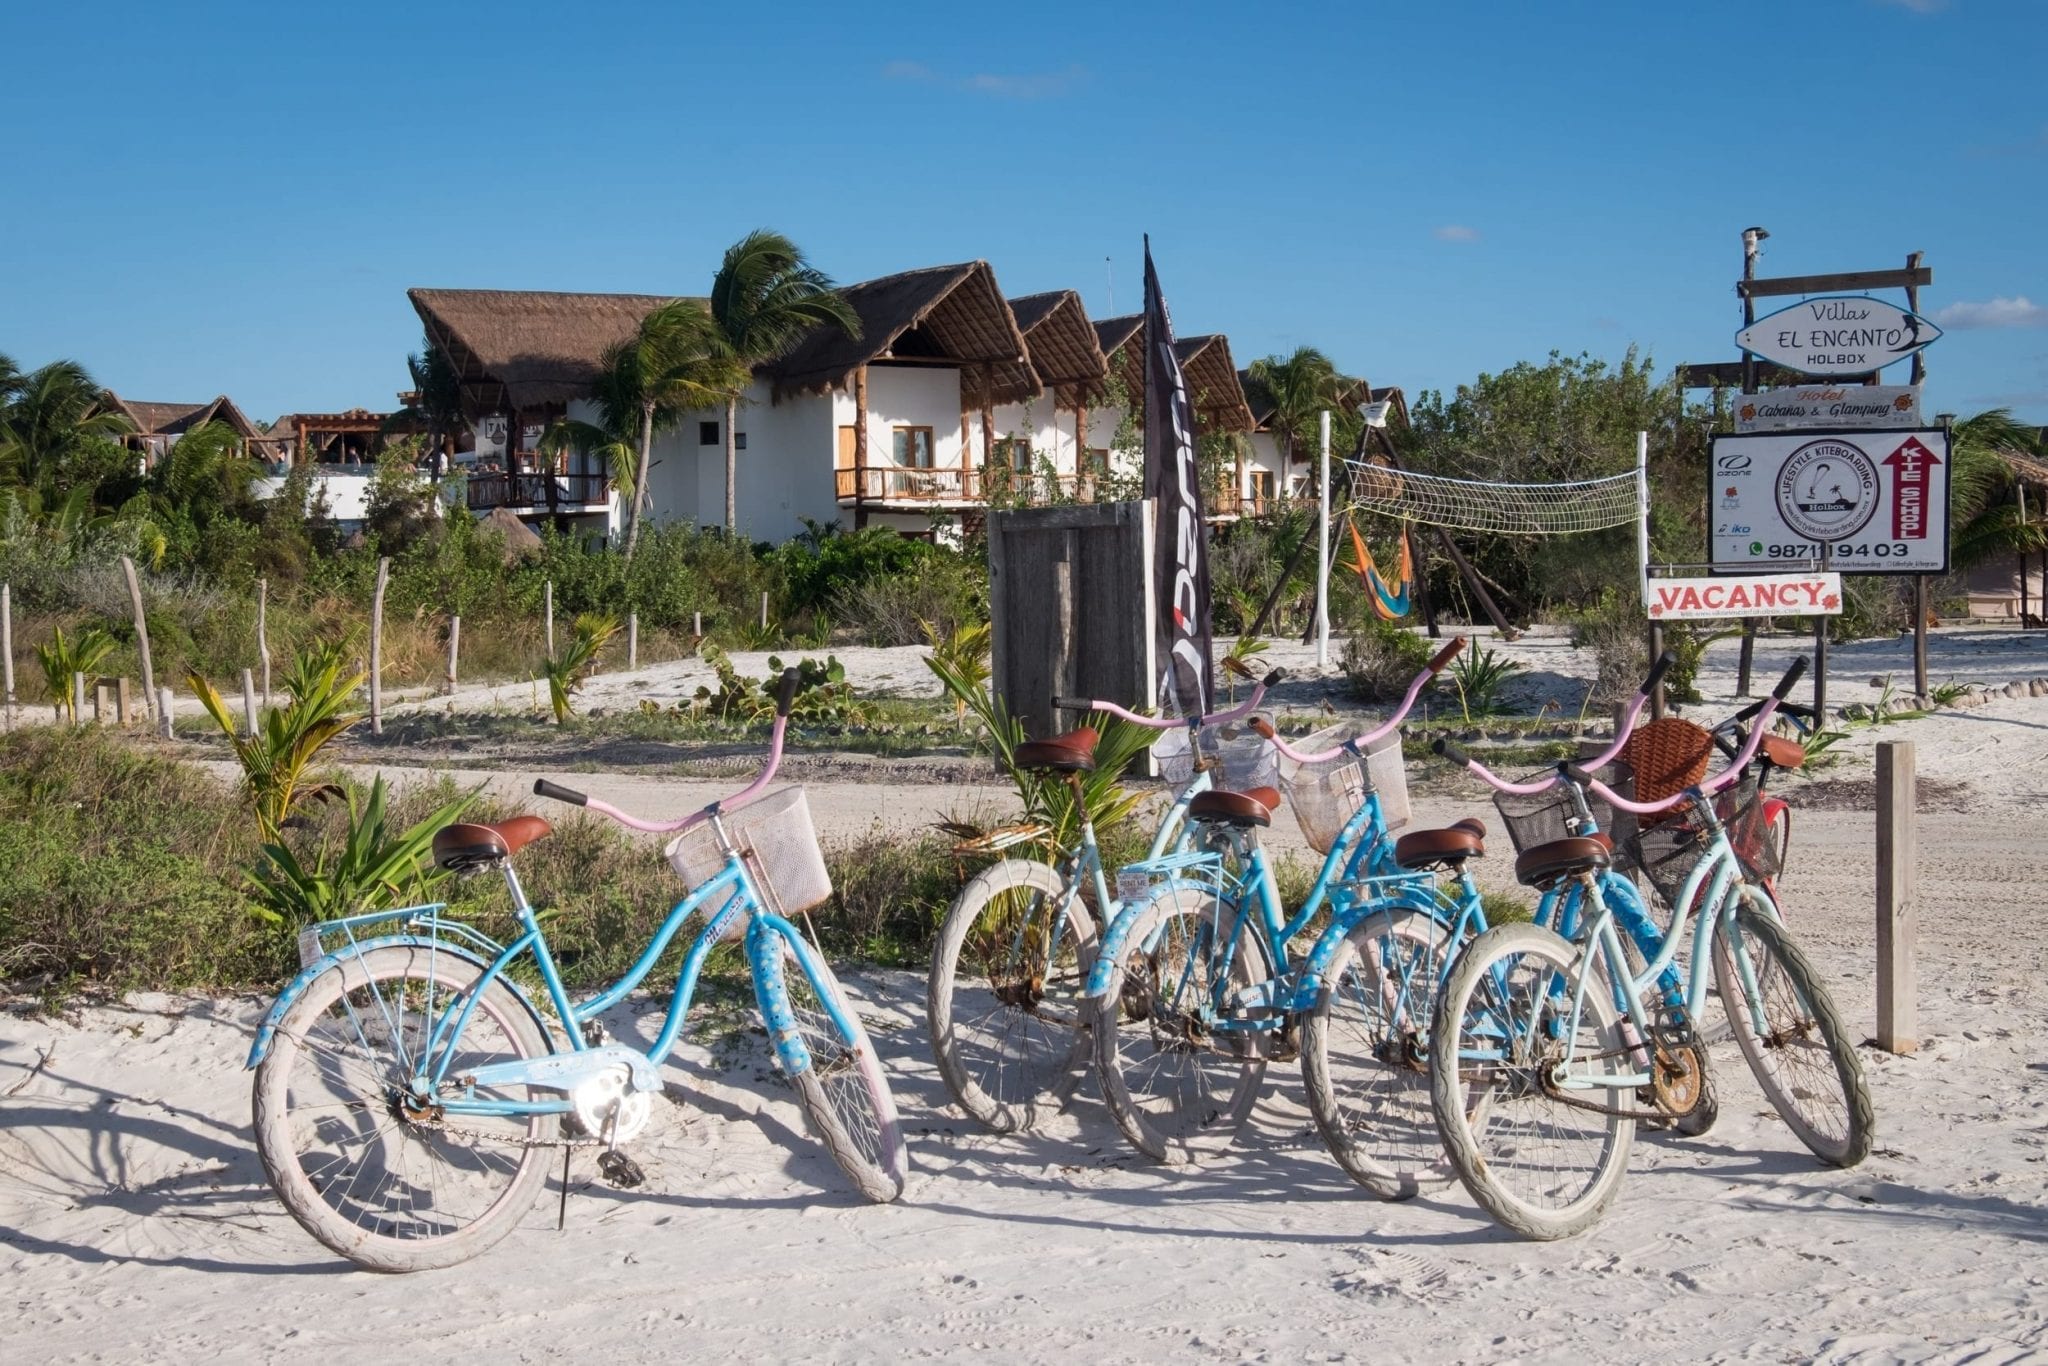 Several bikes on the beach near some villas.